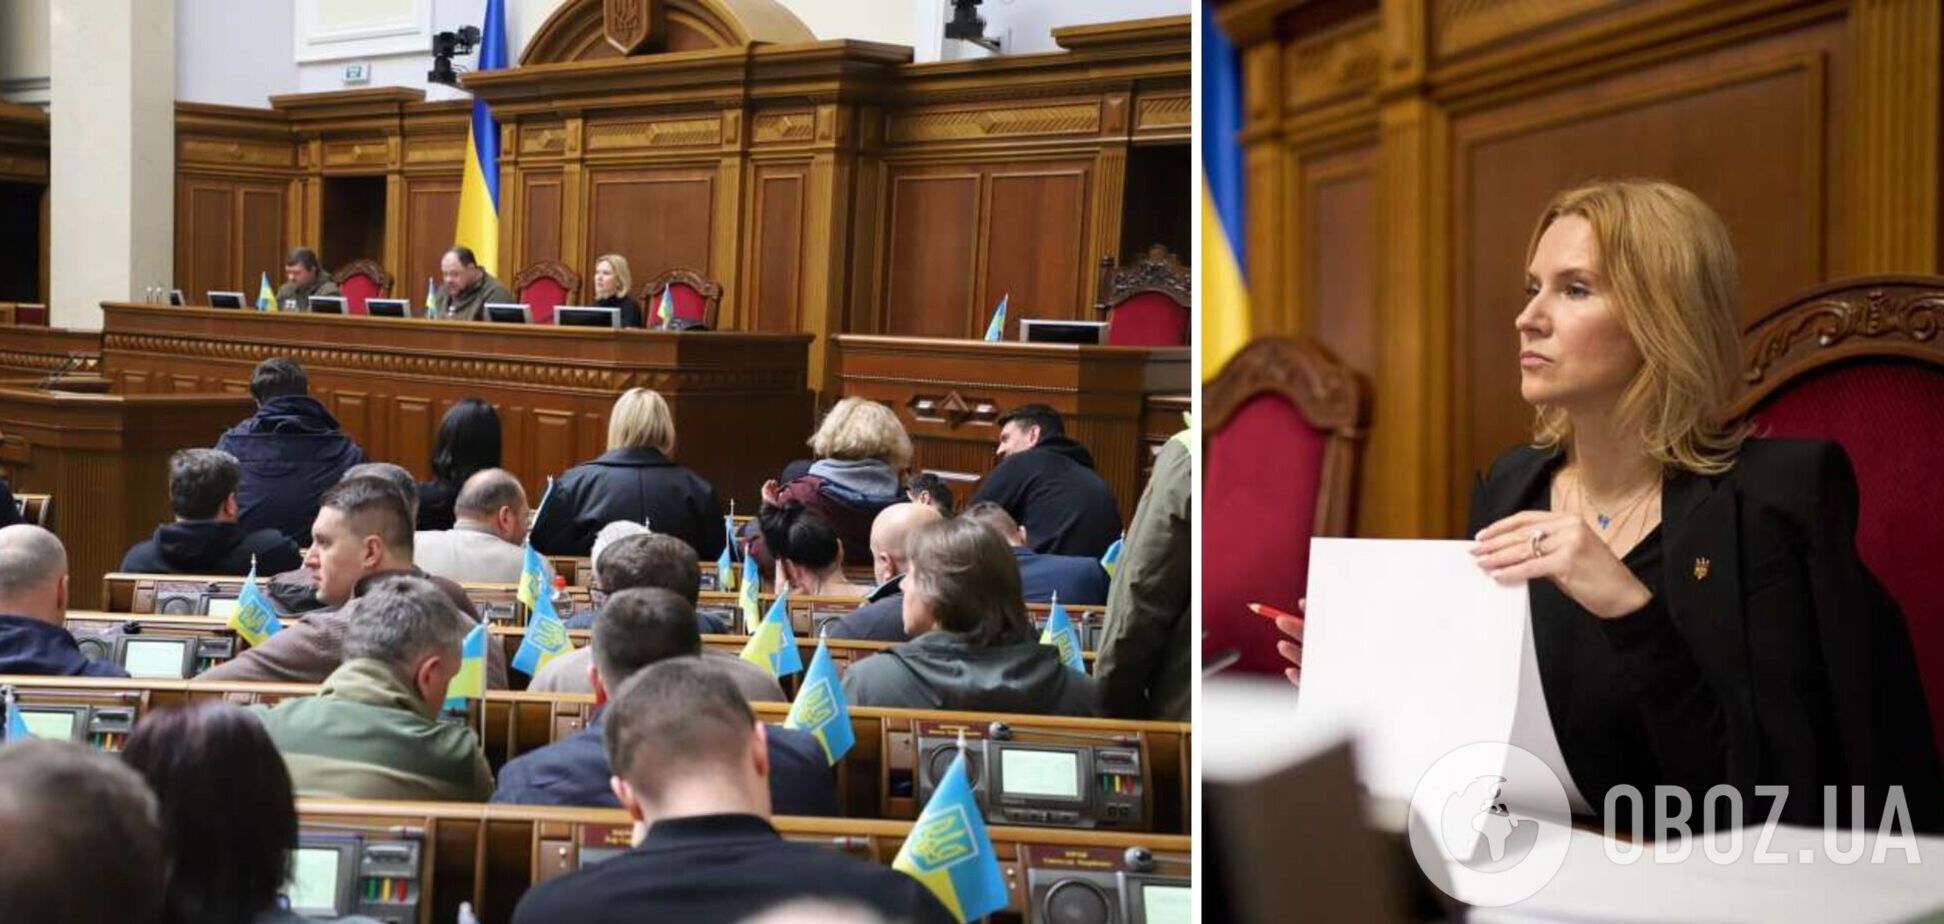 Шаг назад ради единства: вицеспикер Кондратюк о кризисе с командировками депутатов